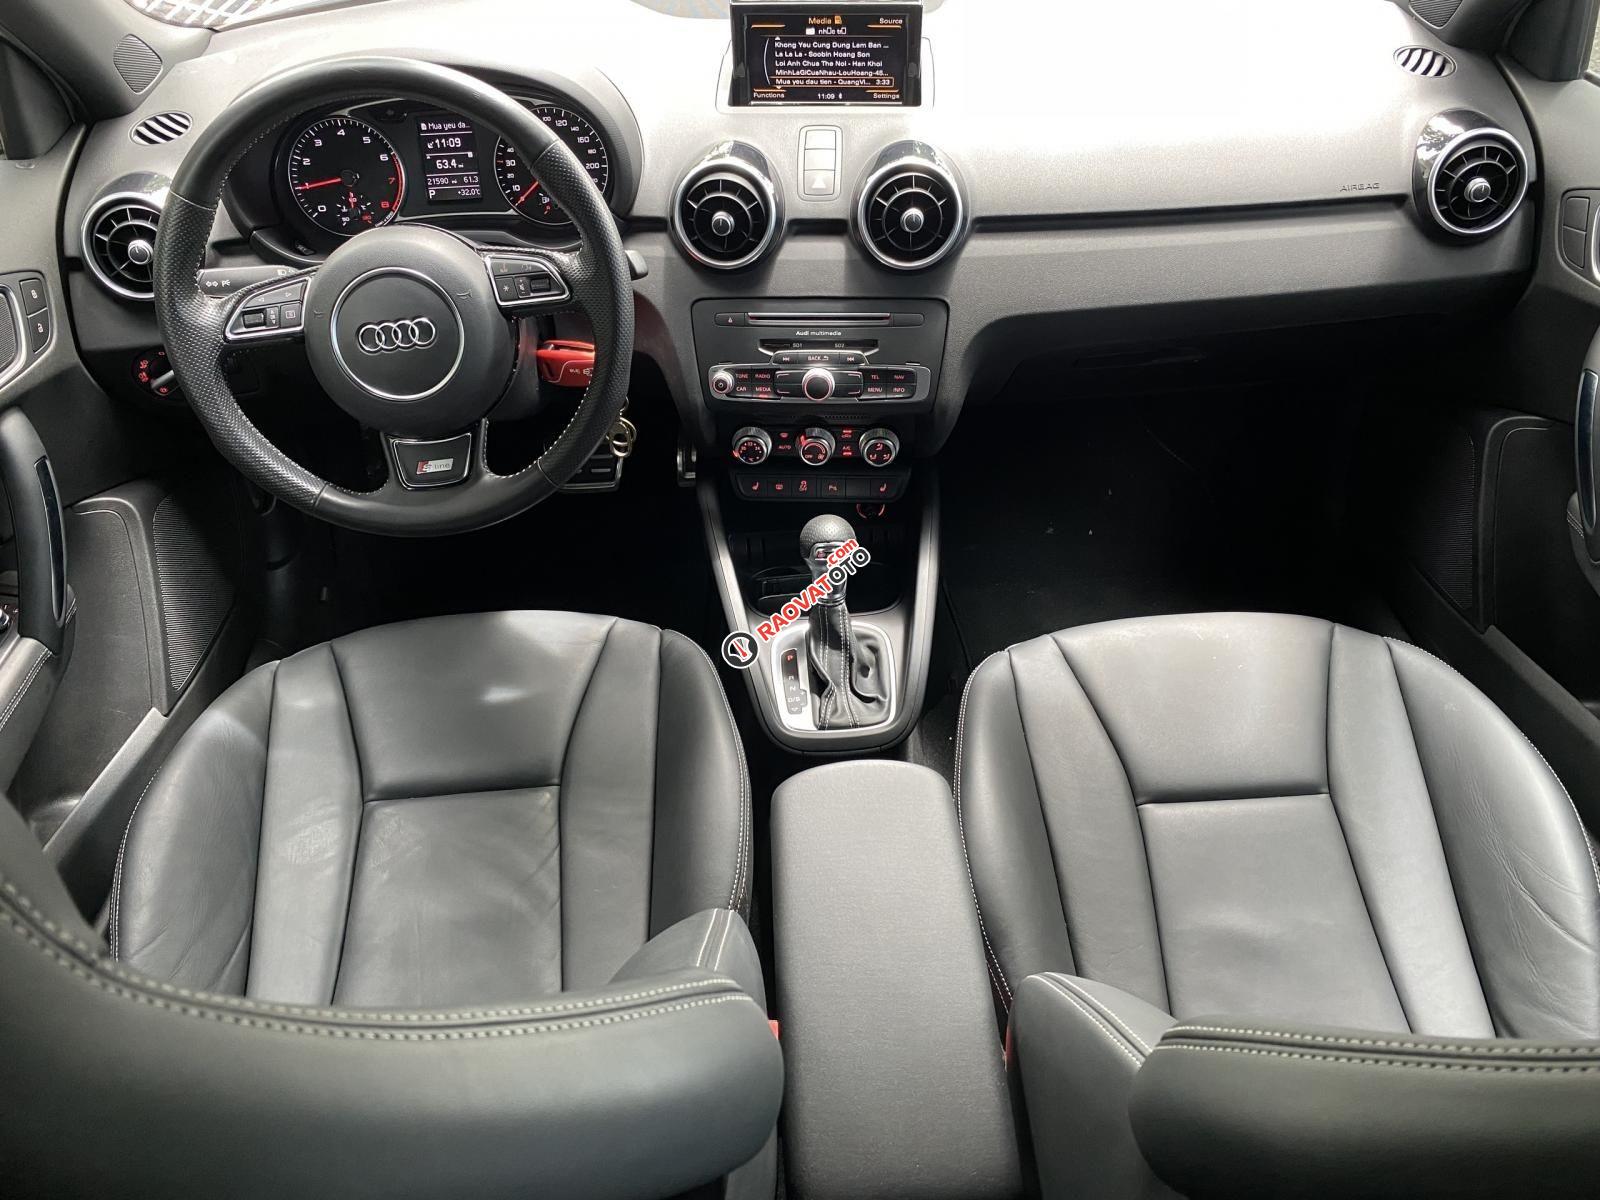 Bán xe Audi A1 bản S-line năm 2015, siêu lướt 21.000km nội thất đen zin nguyên bản, option miên man-11